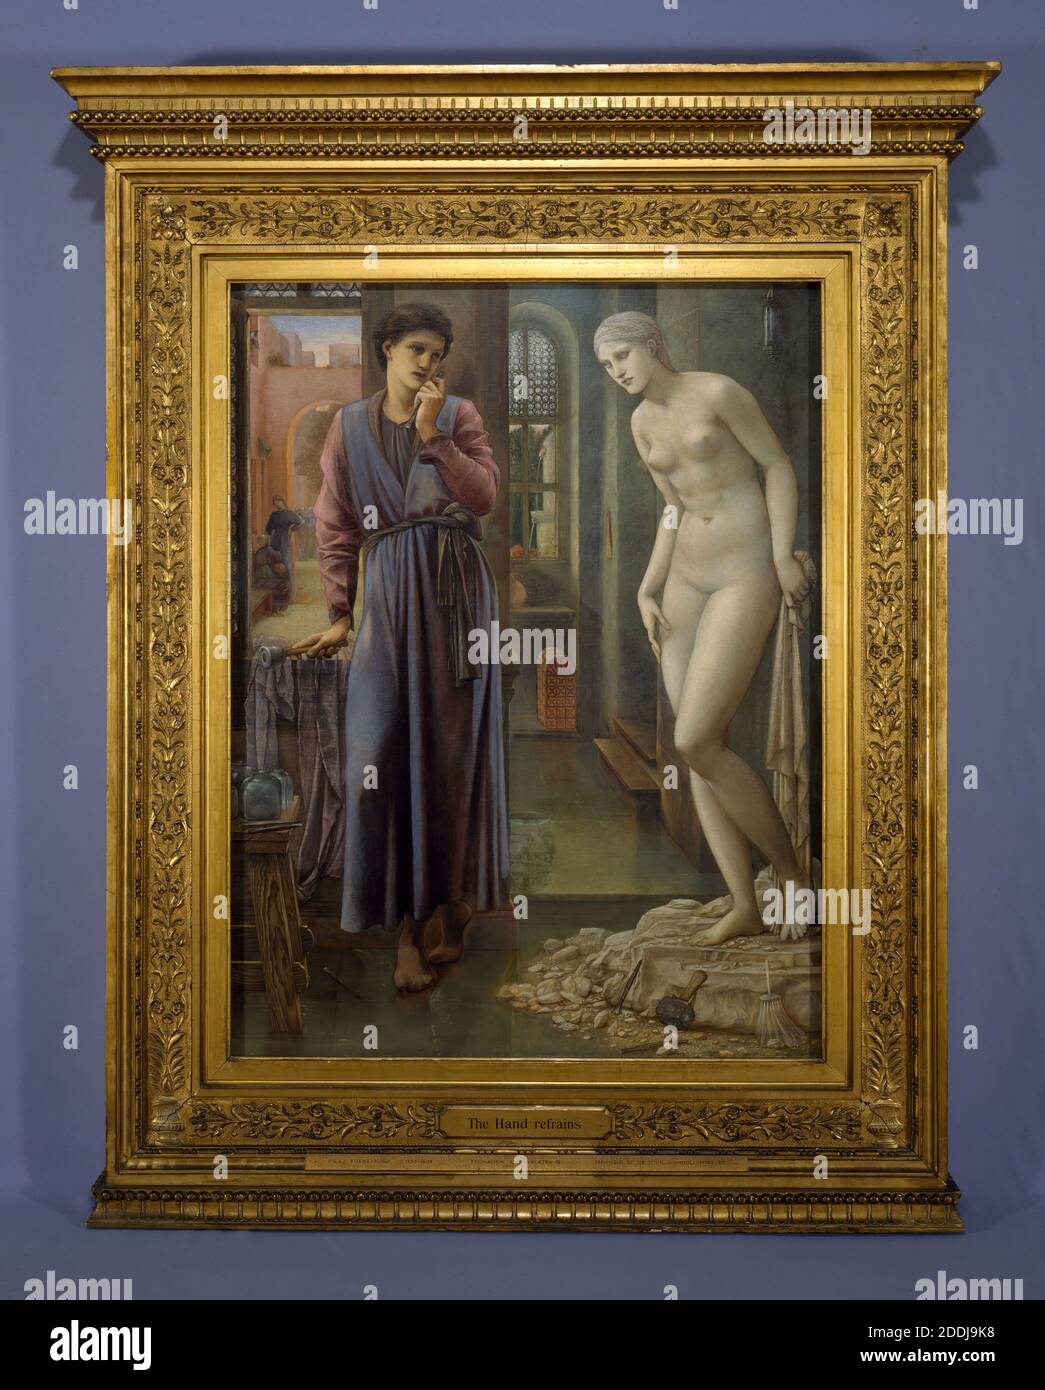 Pygmalion und das Bild, die Hand refrains, 1878 zwei in einer Serie von vier Gemälden Künstler: Edward Burne-Jones Öl auf Leinwand, Kunstbewegung, Pre-Raphaelite, 19. Jahrhundert Stockfoto